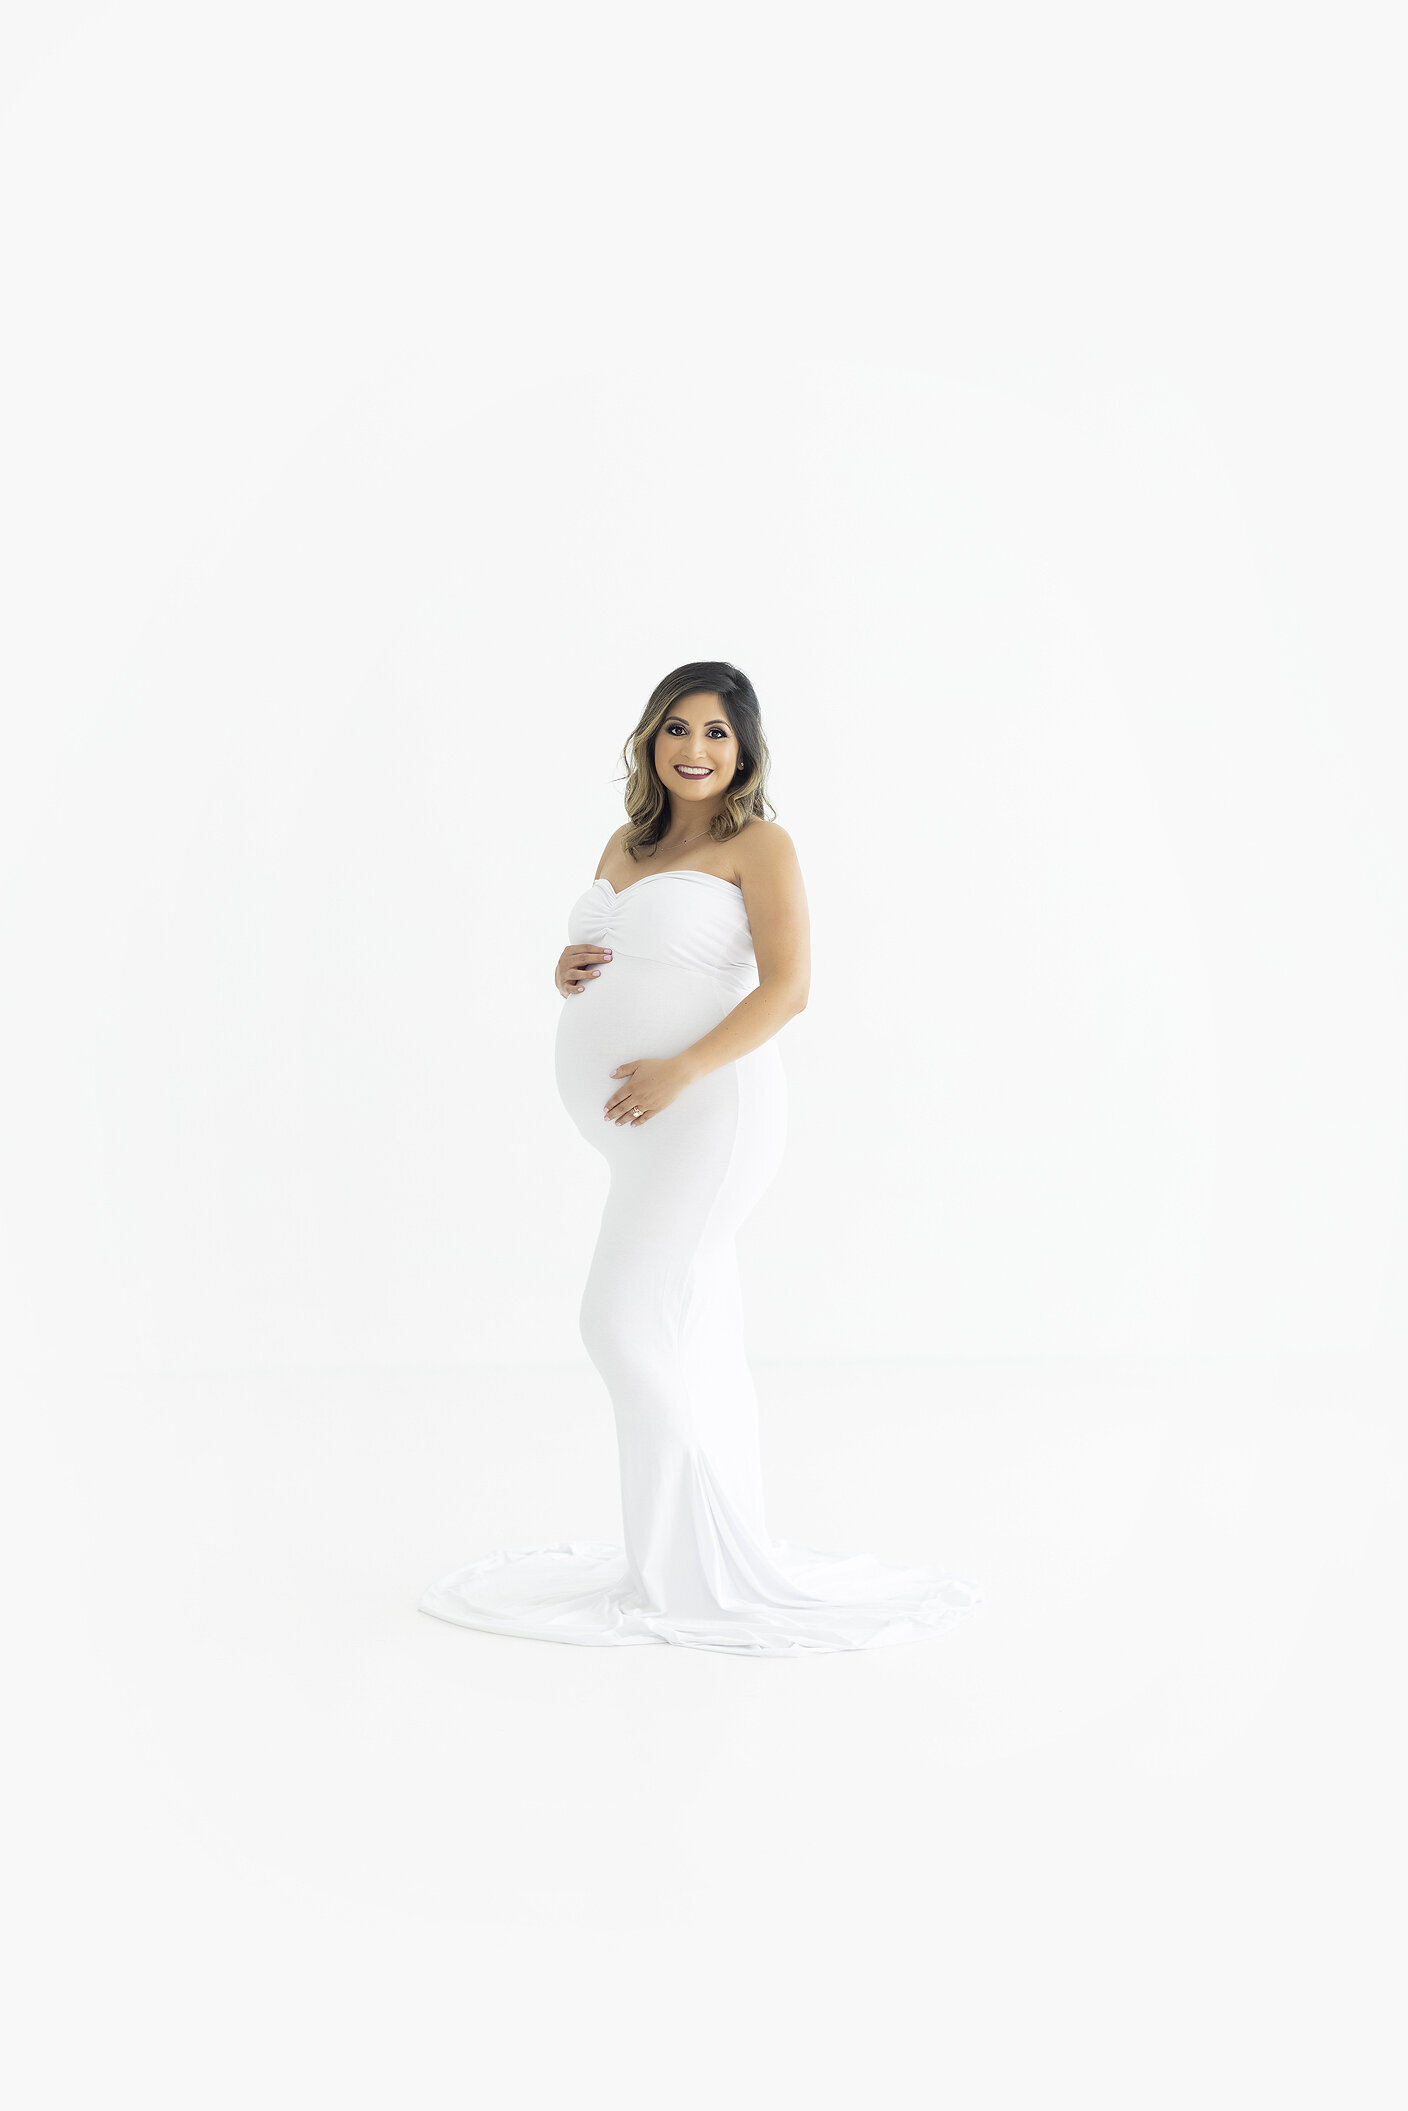 Maternity session in white studio, a Dallas maternity photographer.